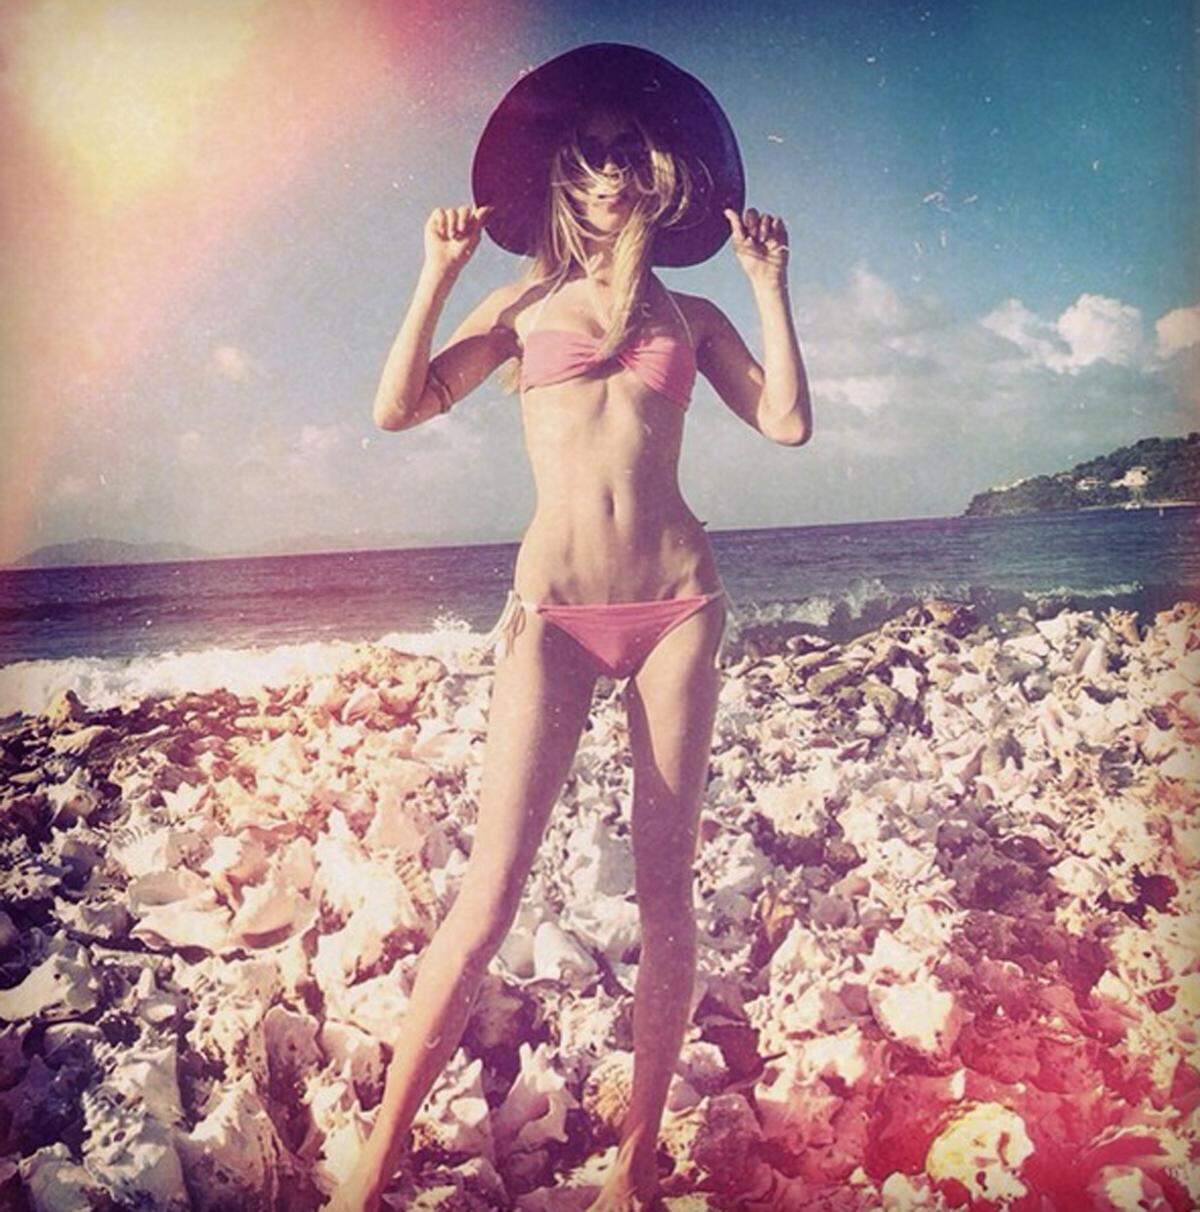 It-Girl Poppy Delevingne hatte die gleiche Idee. Ihre Bademodenkollektion zeigte sie im Urlaub an der Karibikküste Kolumbiens vor.